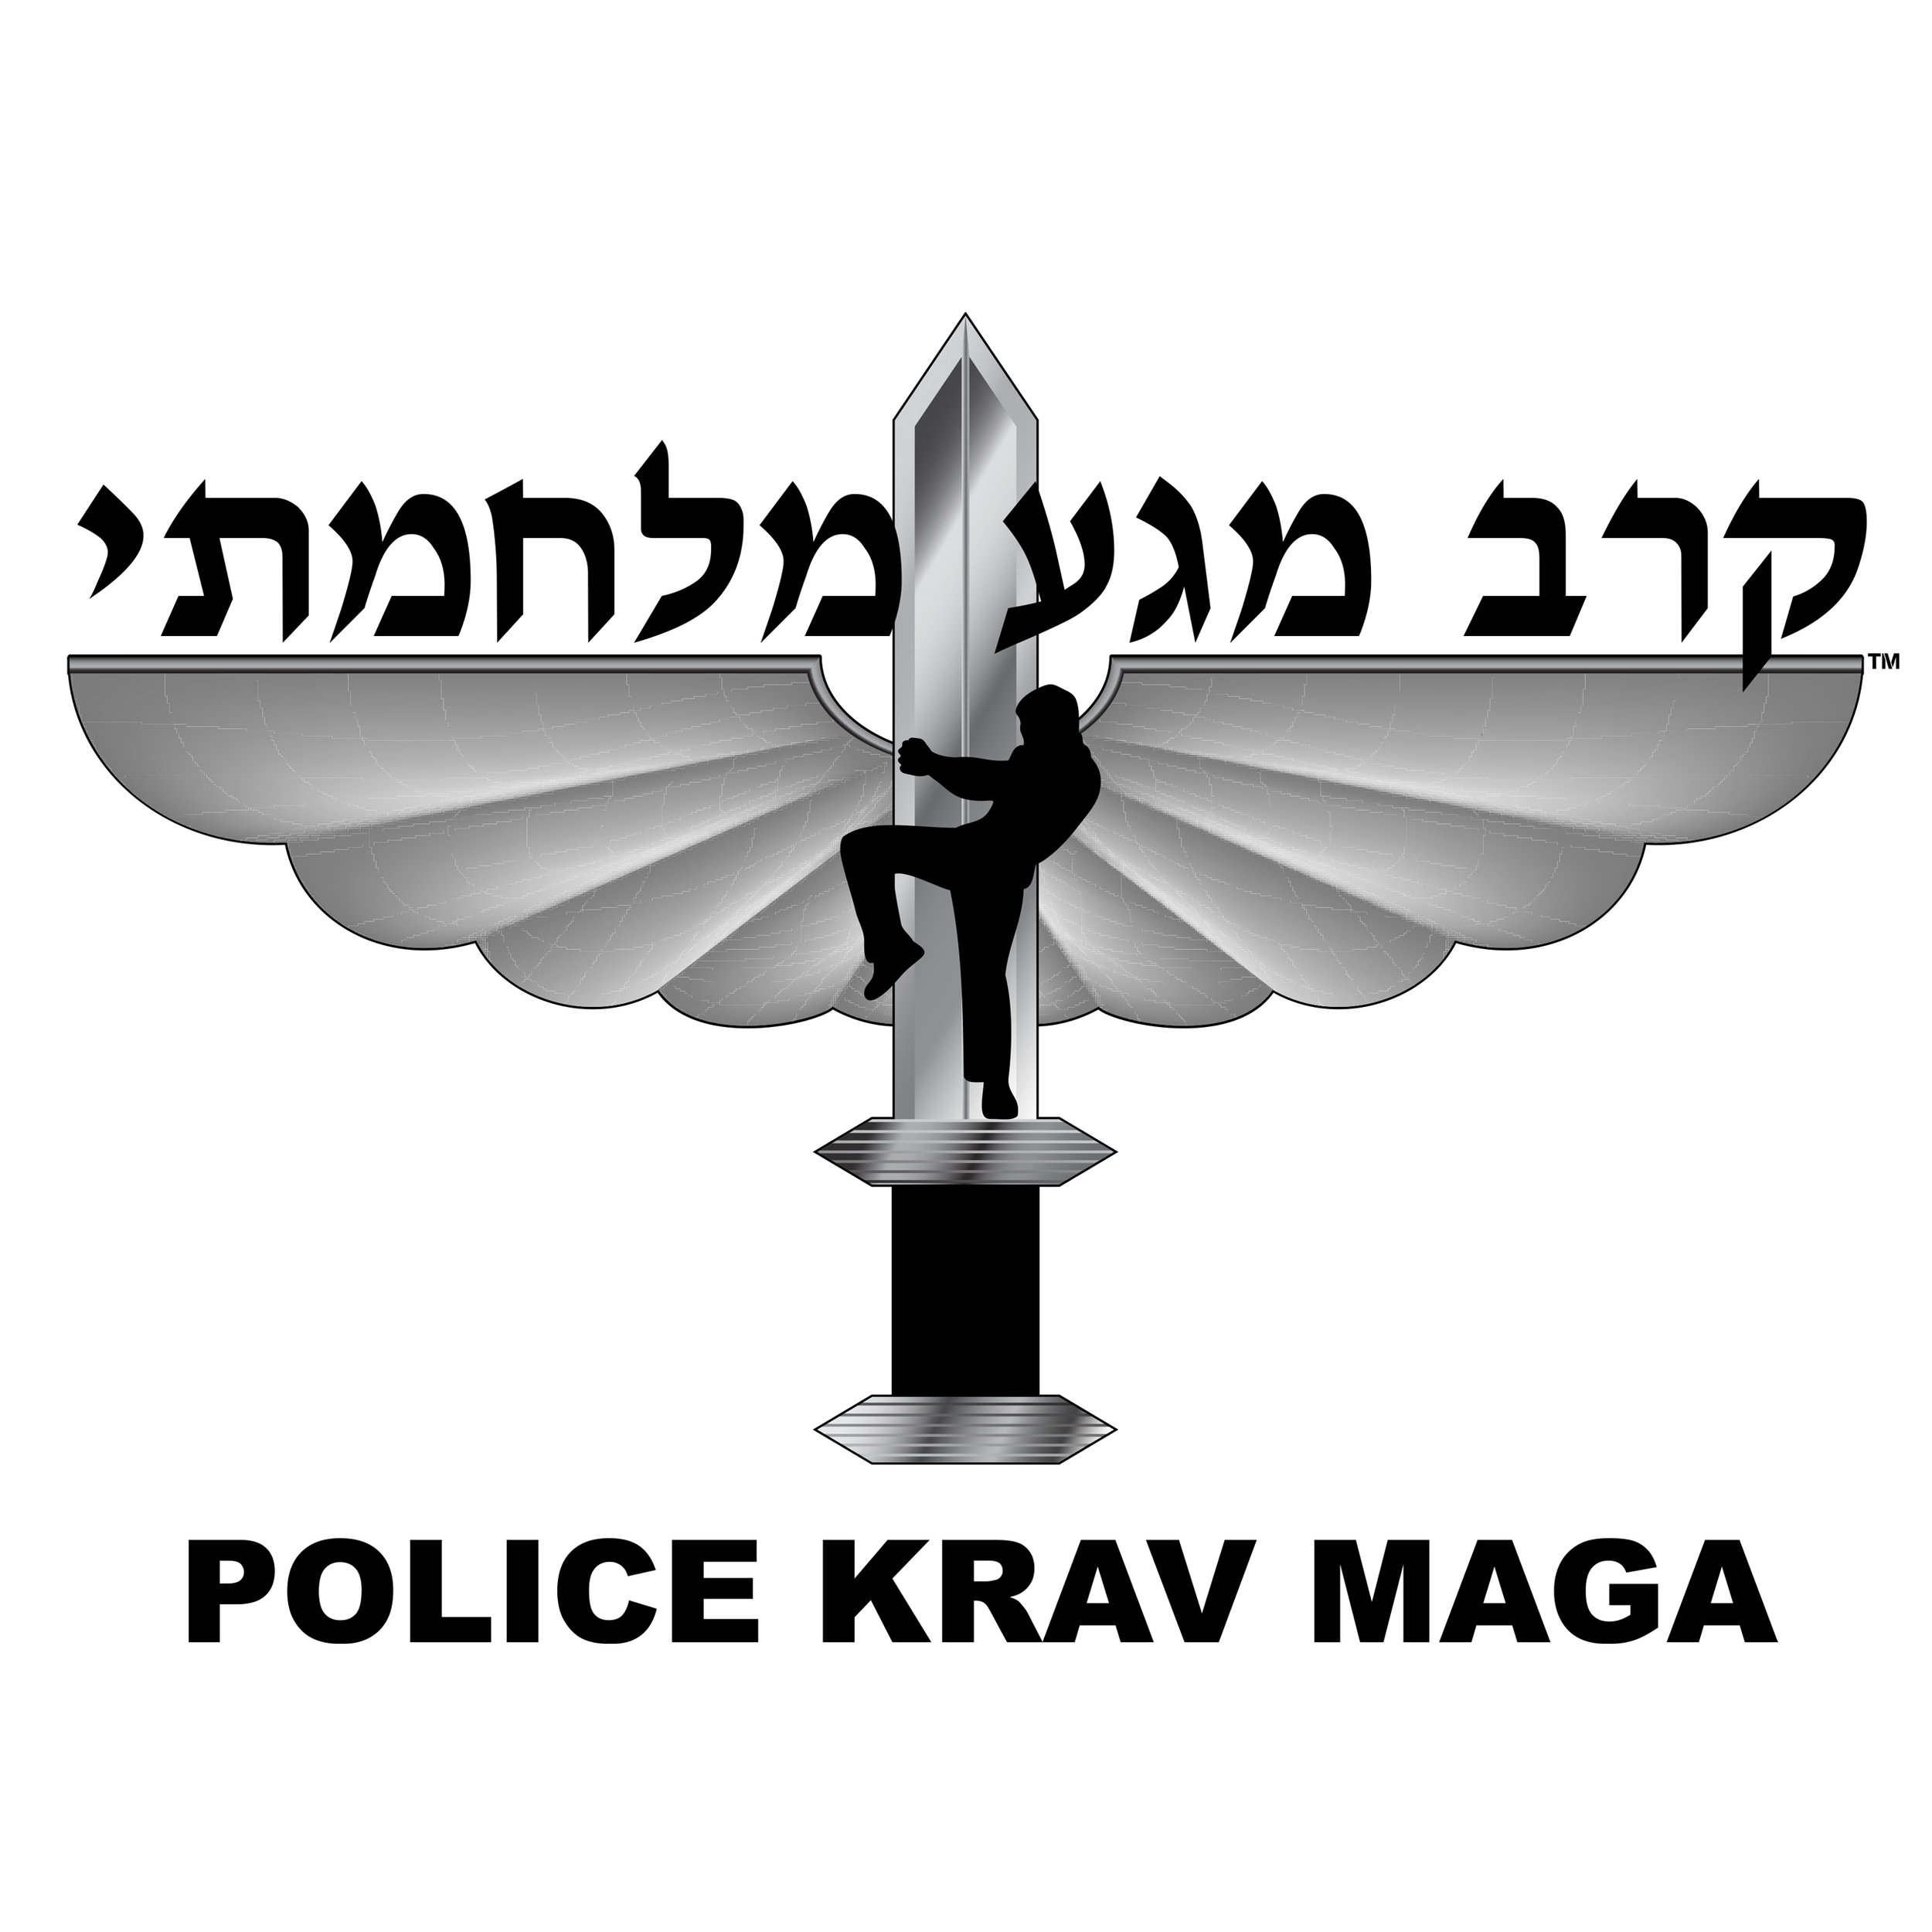 POLICE KRAV MAGA (Copy)